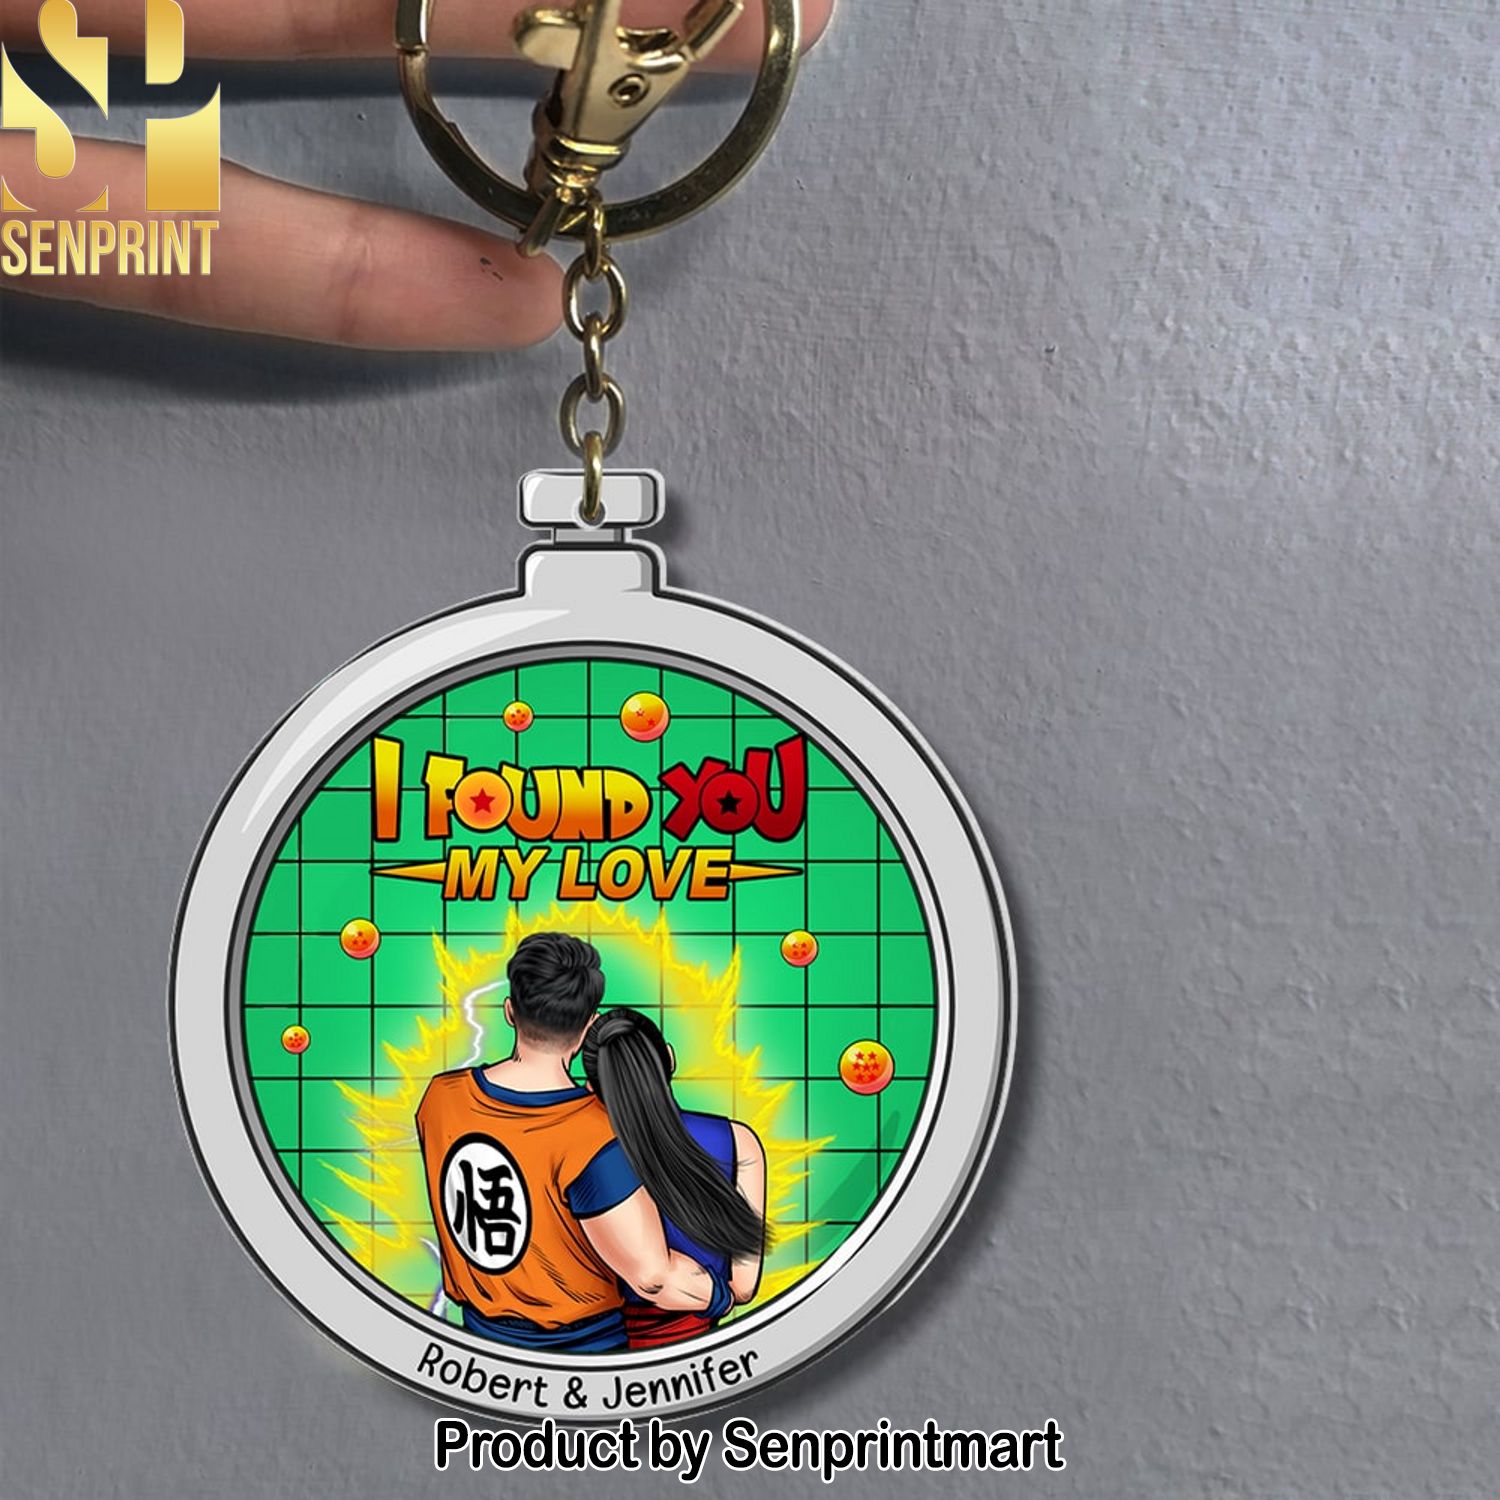 Dragon Balls Z, I Found You My Love Personalized Keychain